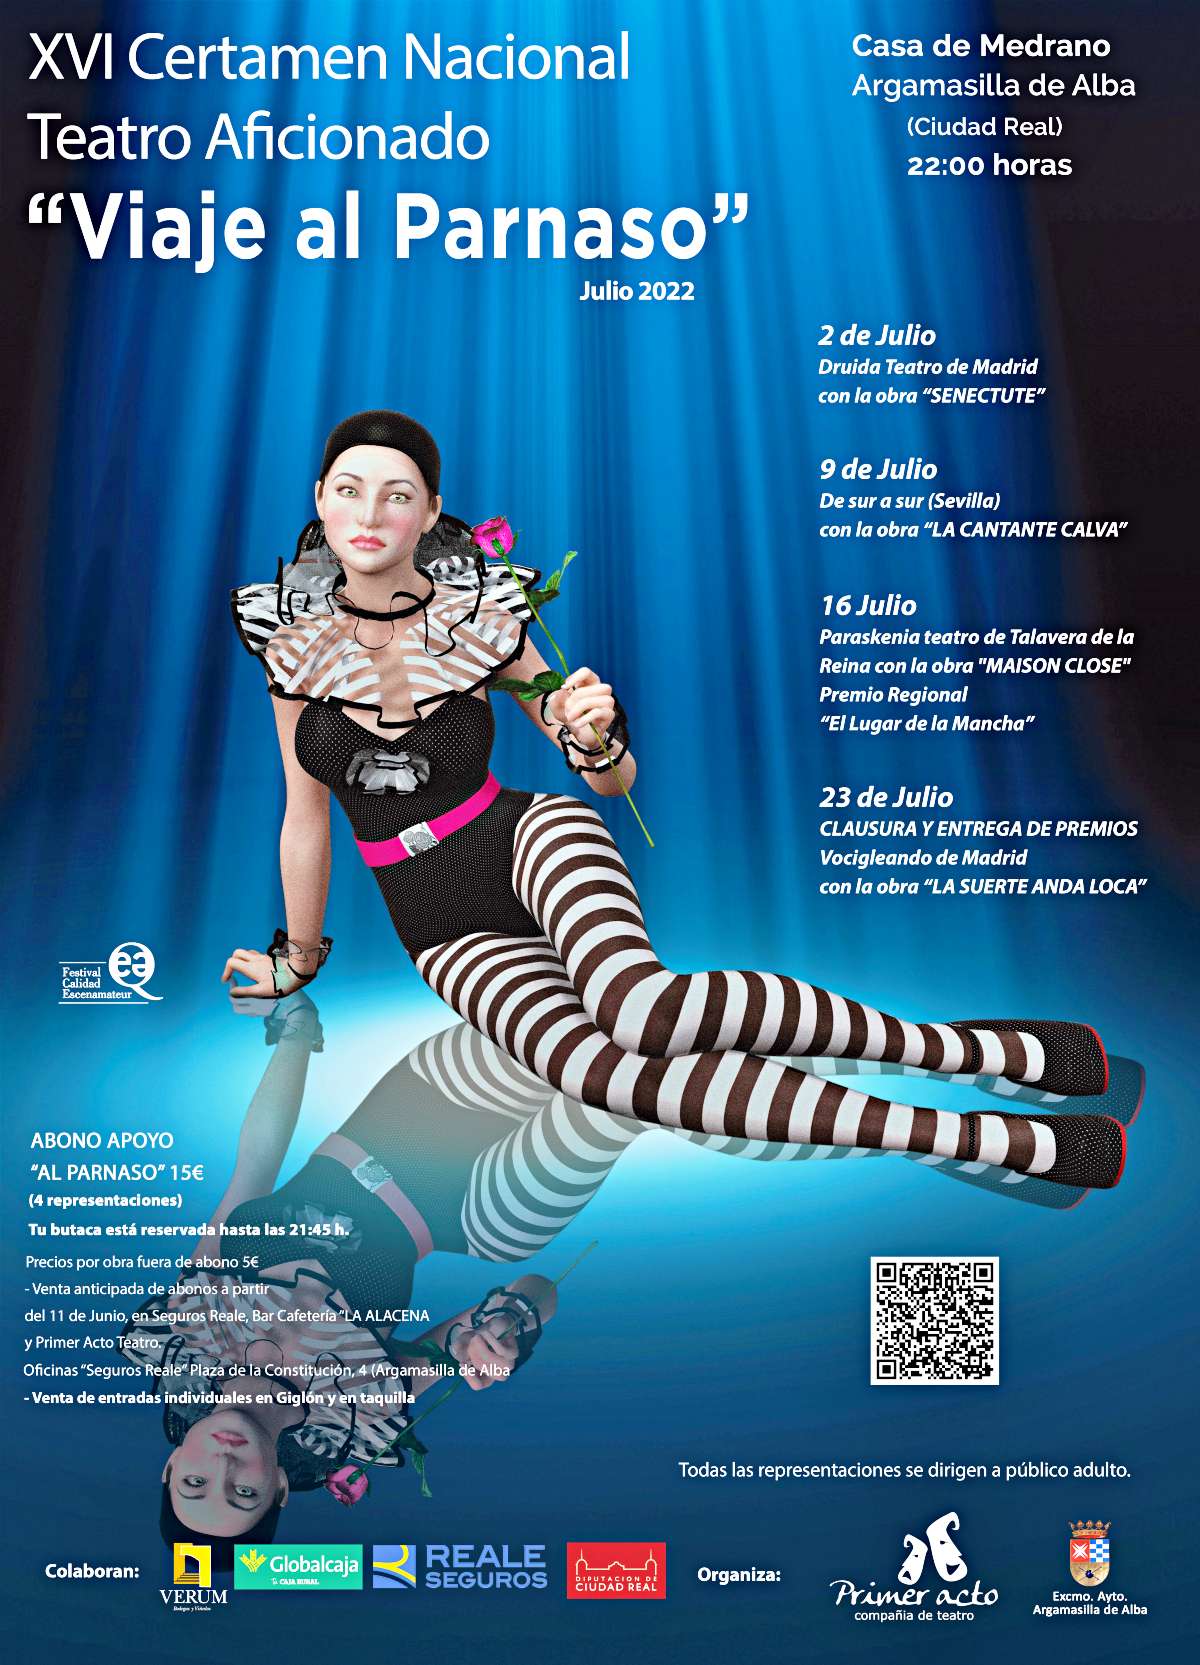 Este sábado comienza la 16ª edición de "Viaje al Parnaso" en Argamasilla de Alba